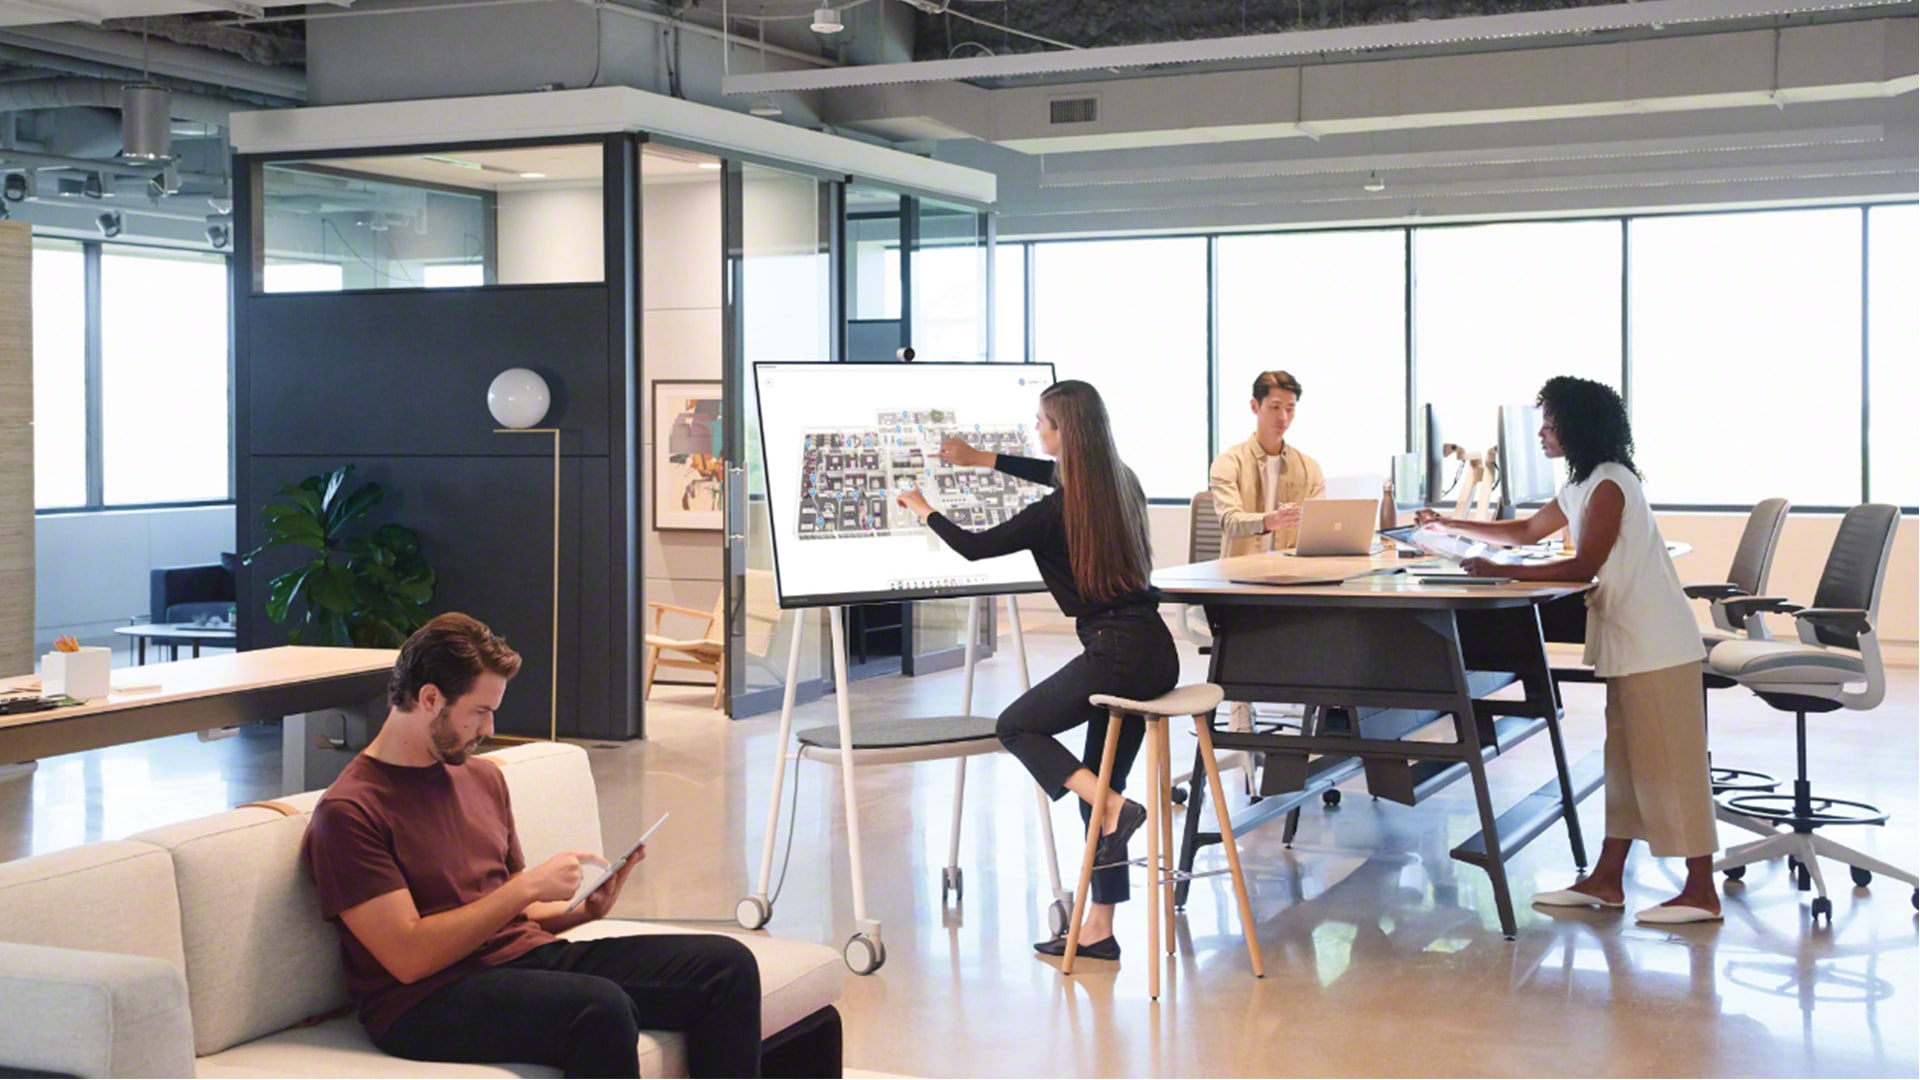 Großraumbüro, in dem ein Team arbeitet. Frau mit Surface Hub 2S in der Mitte des Fotos